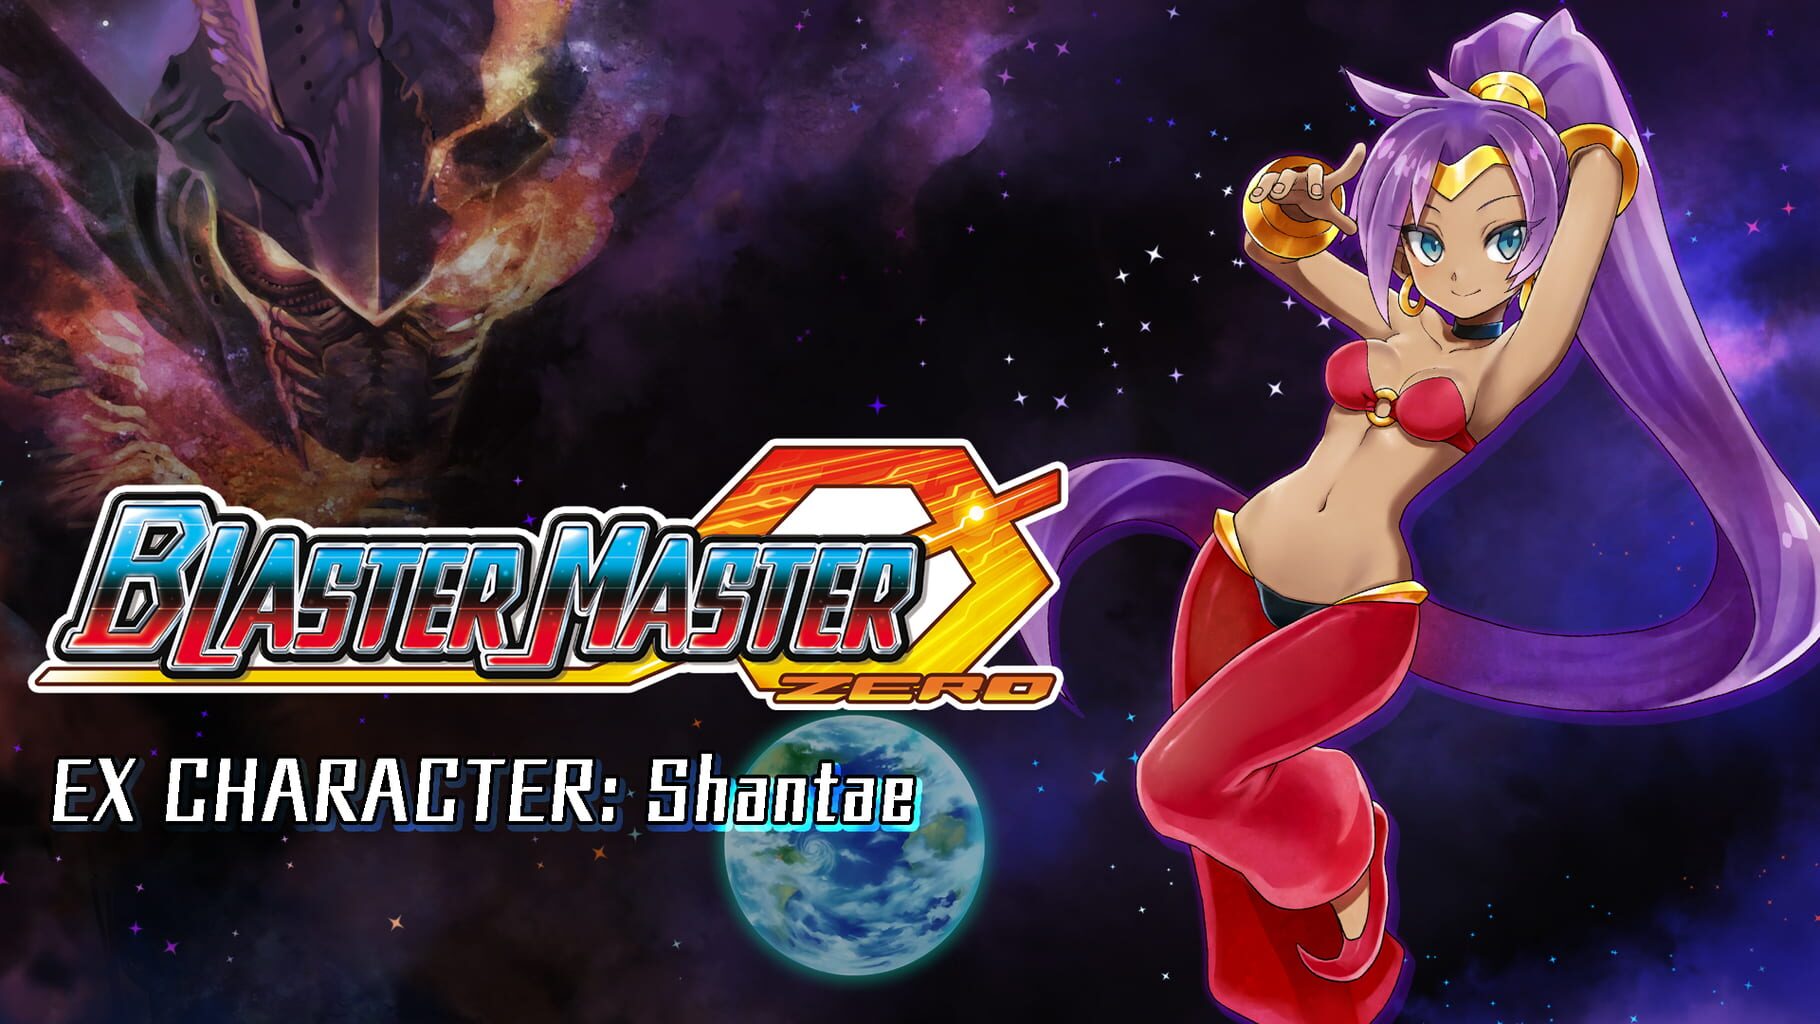 Blaster Master Zero: EX Character - Shantae artwork